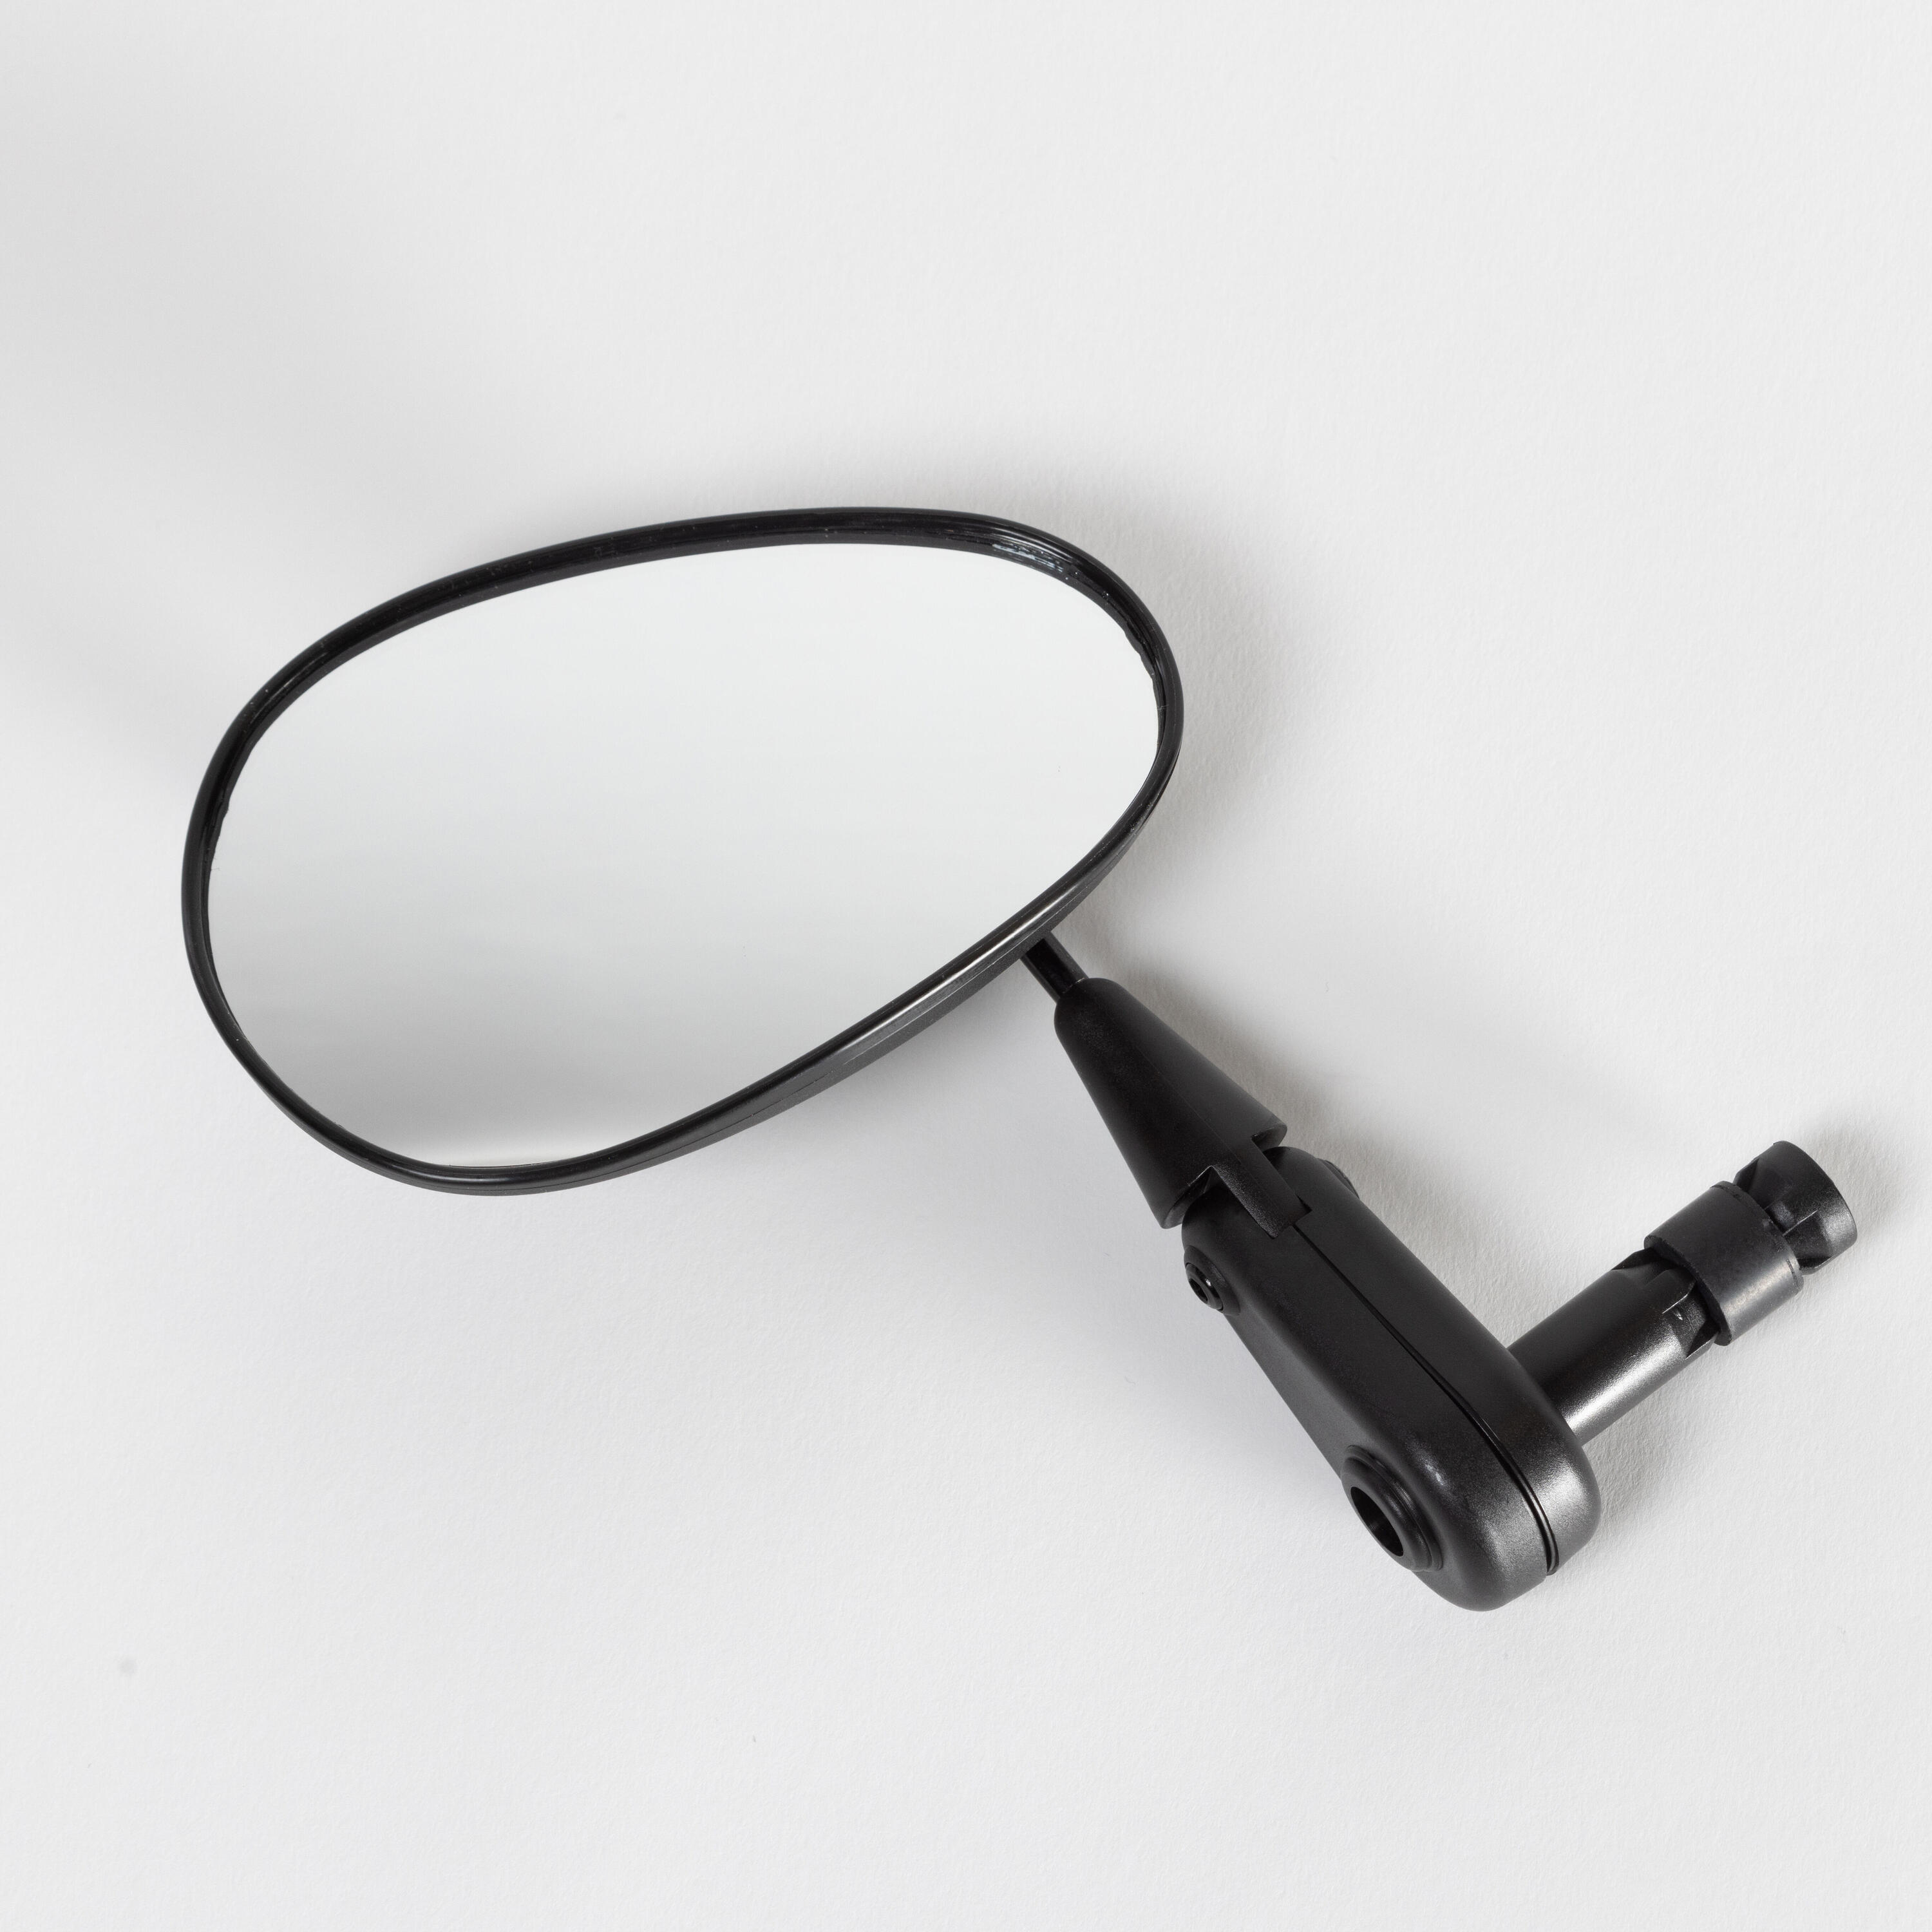 Зеркало заднего вида для велосипеда черное 100 Elops черное серебряное зеркало заднего вида для снятия слепых зон